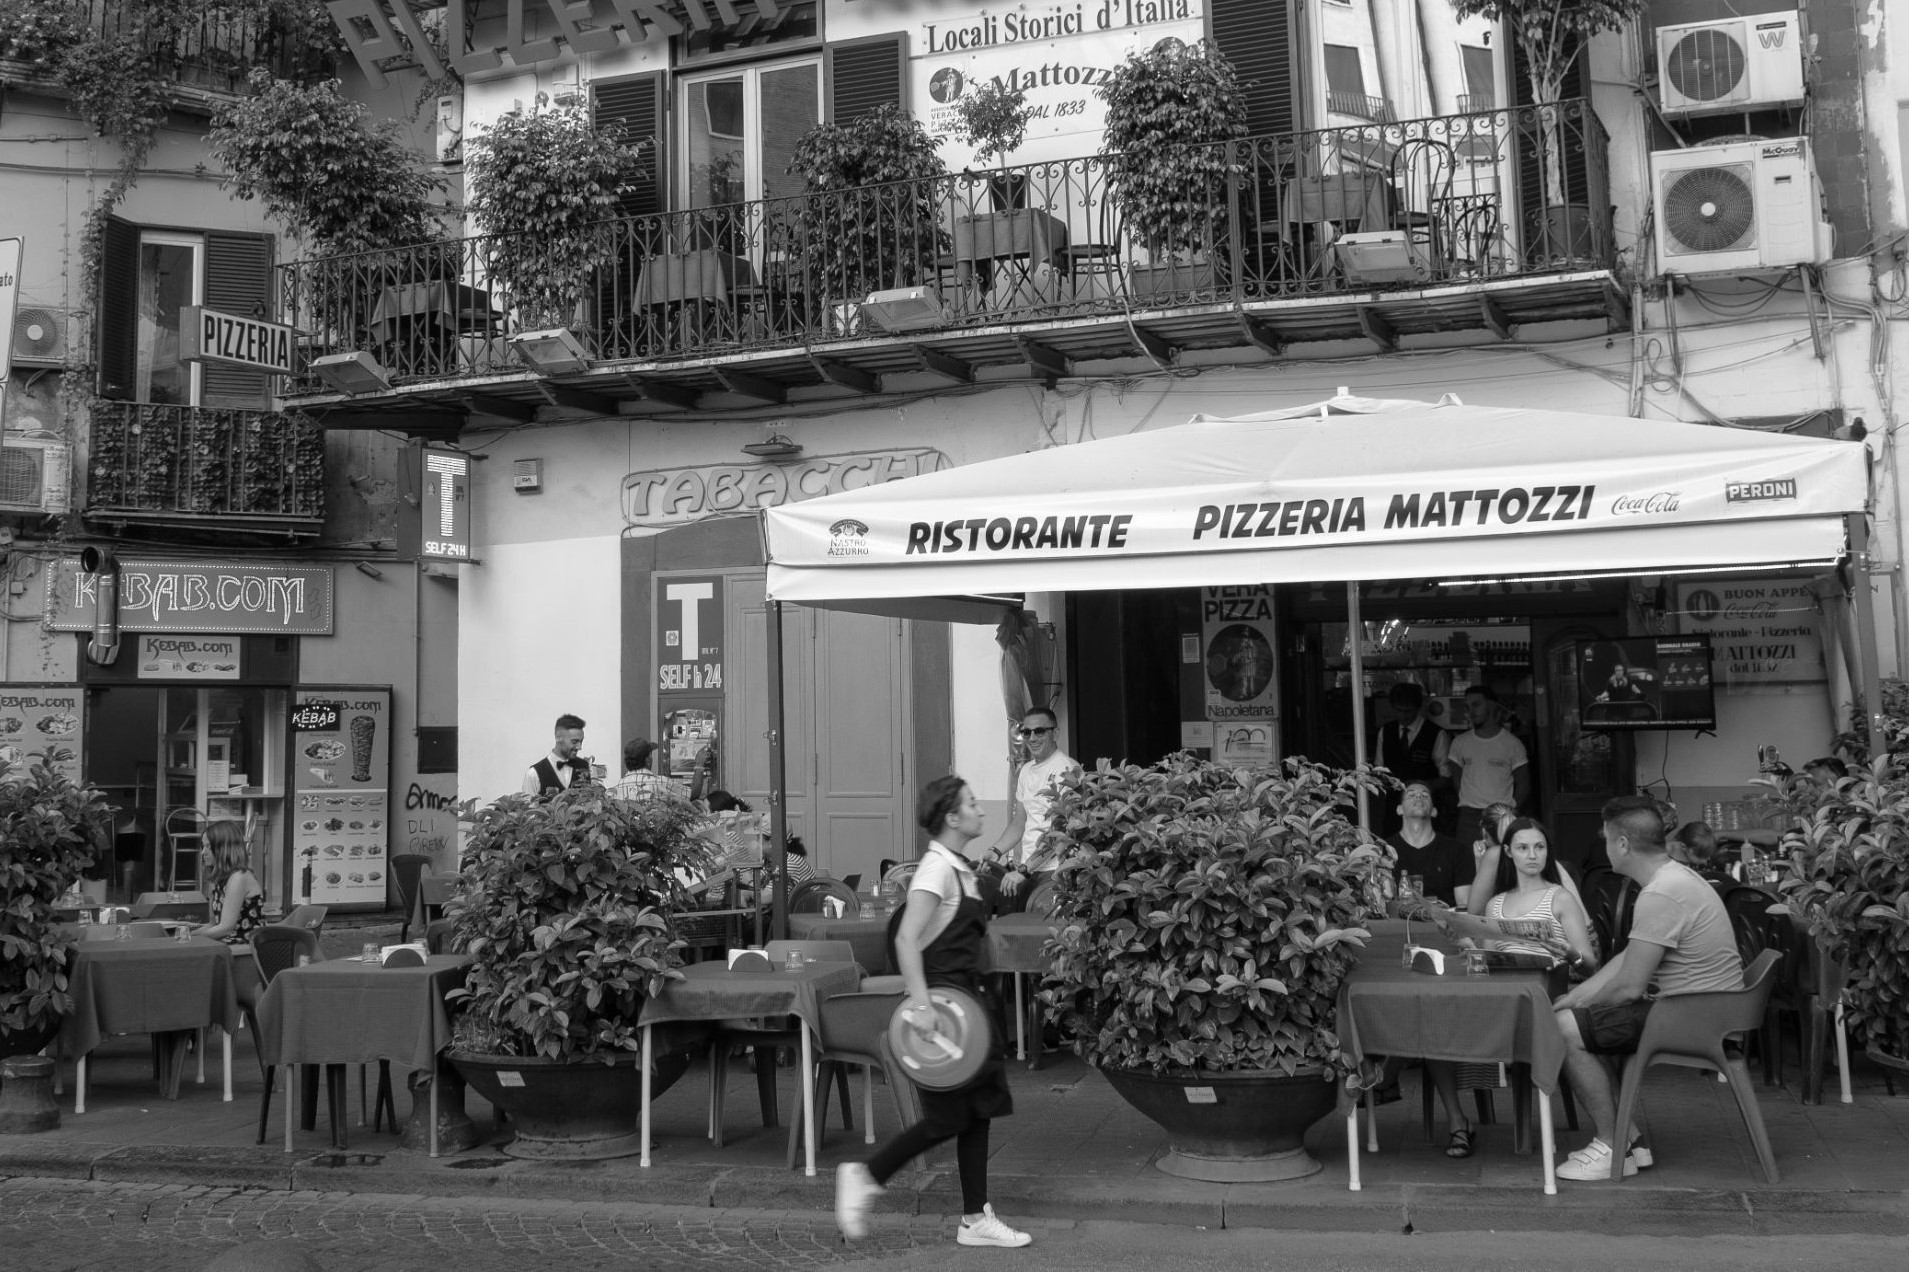 Pizzeria in Naples, Italy